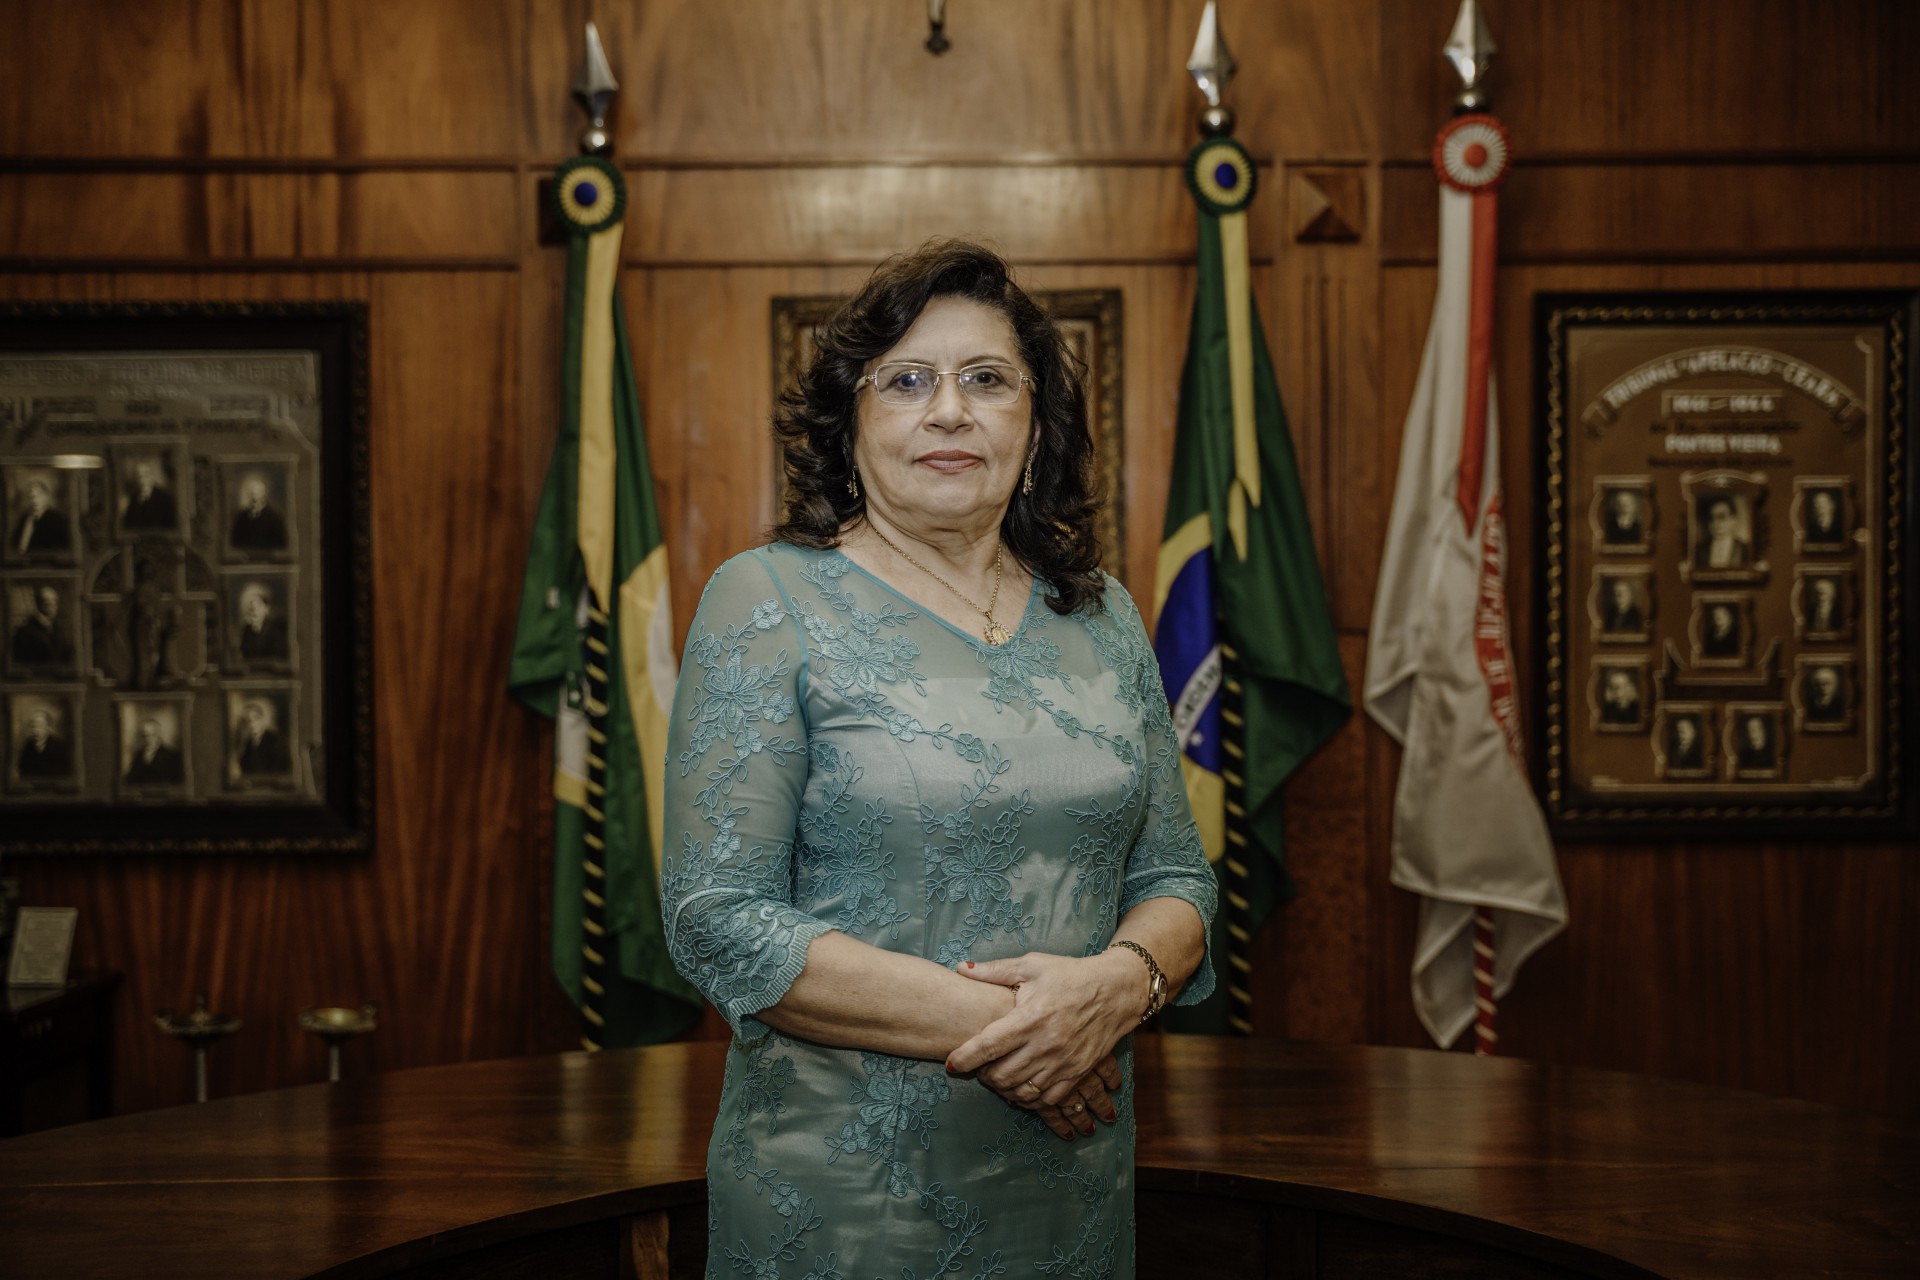 ￼DESEMBARGADORA Nailde Pinheiro é a terceira mulher a comandar o Judiciário cearense (Foto: JÚLIO CAESAR)